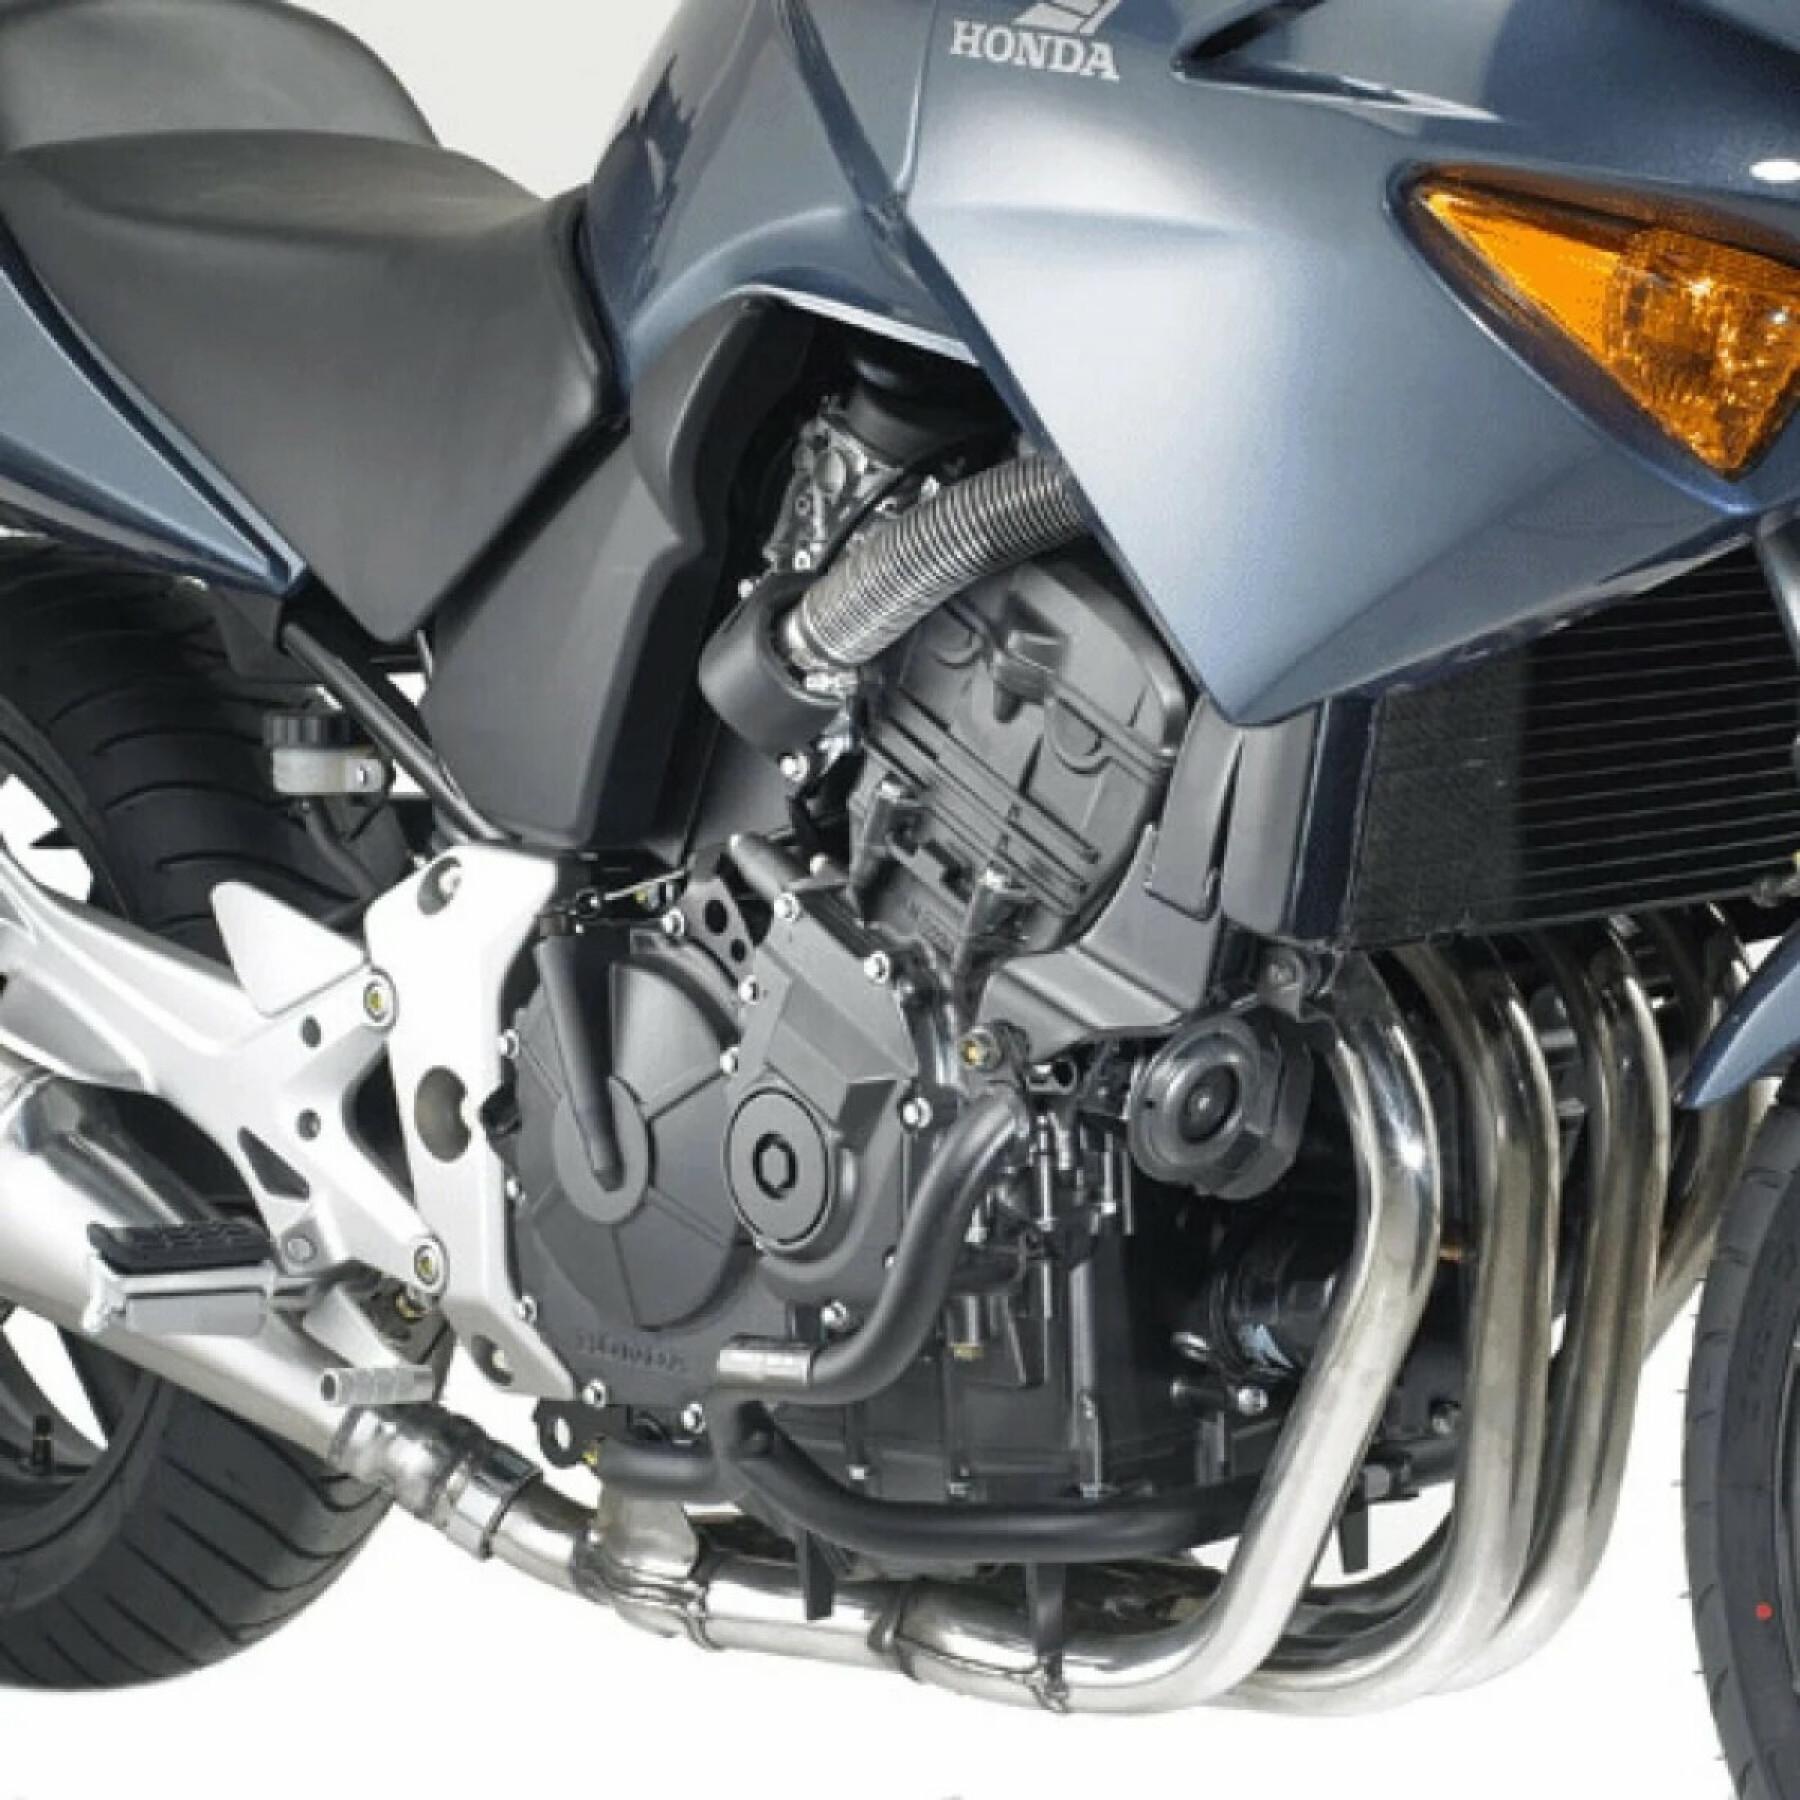 Proteções contra respingos Givi Honda CB600F